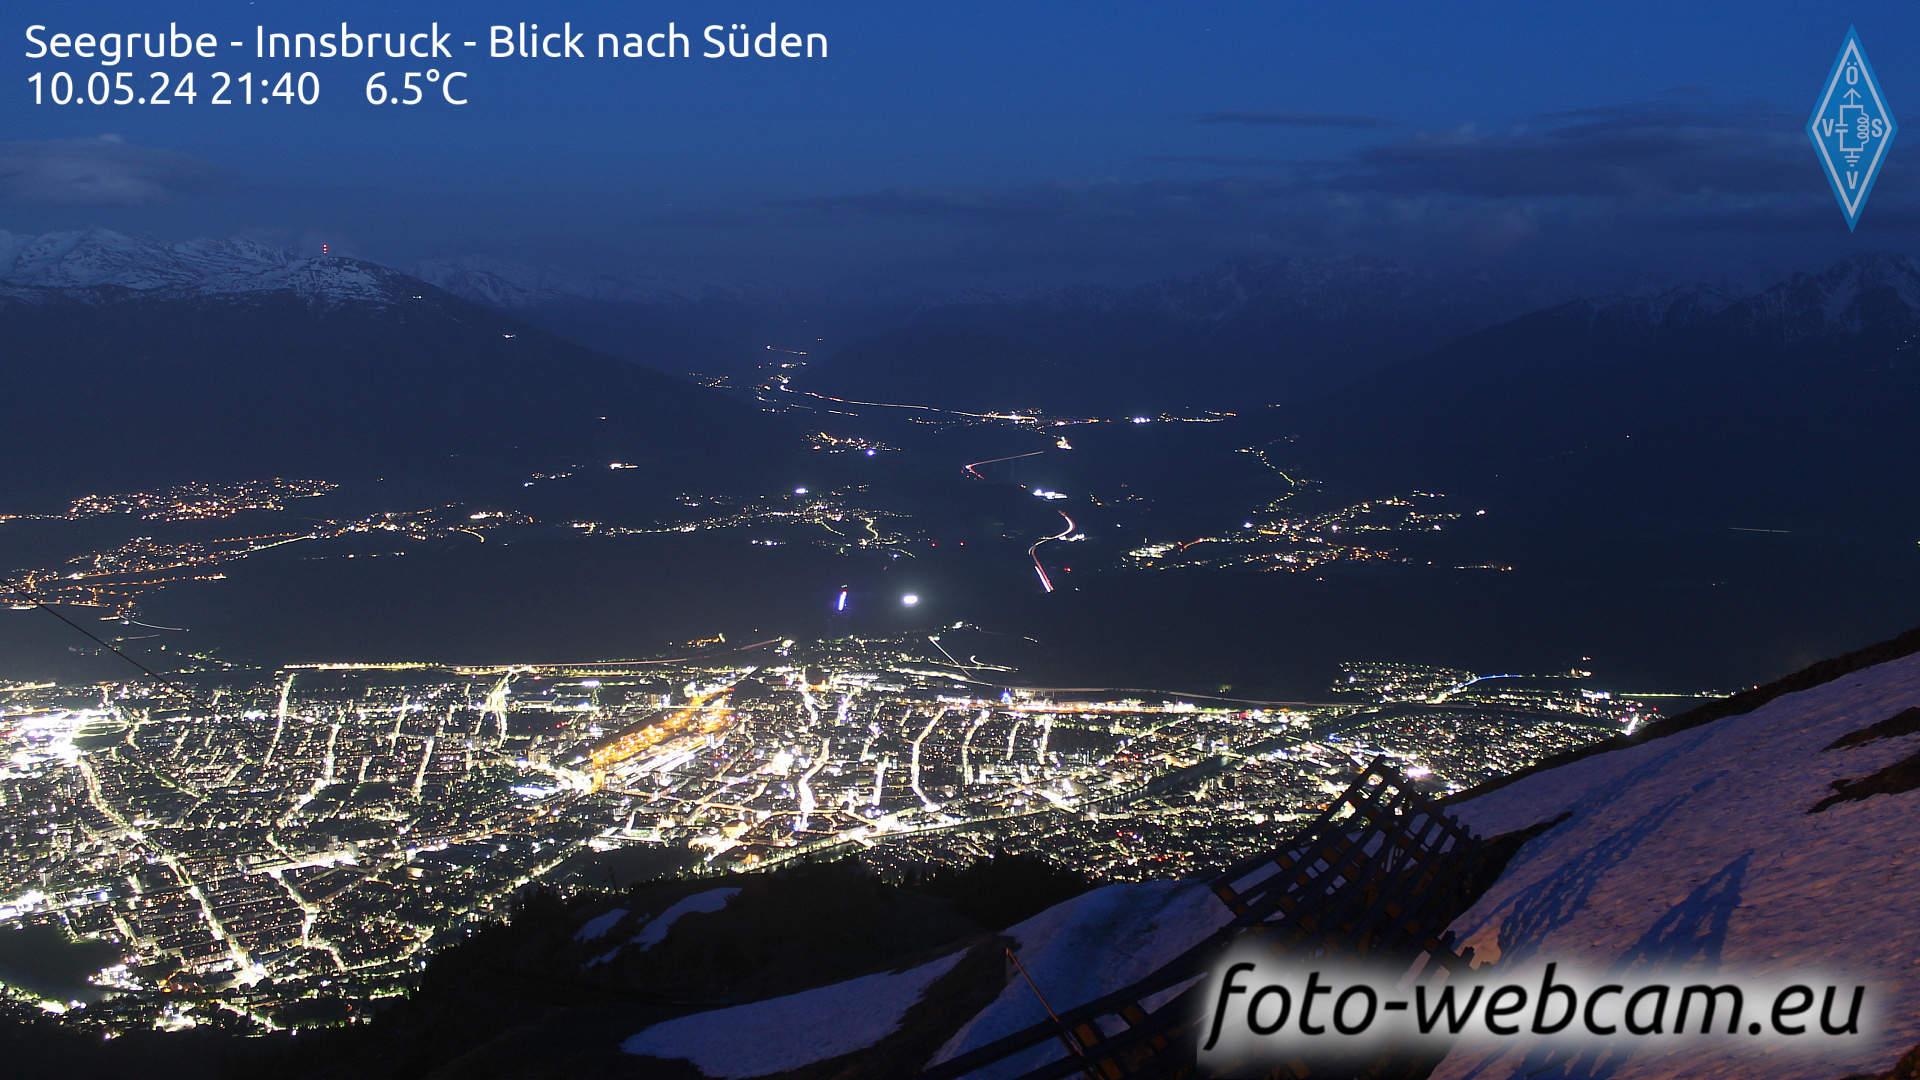 Innsbruck Di. 21:48